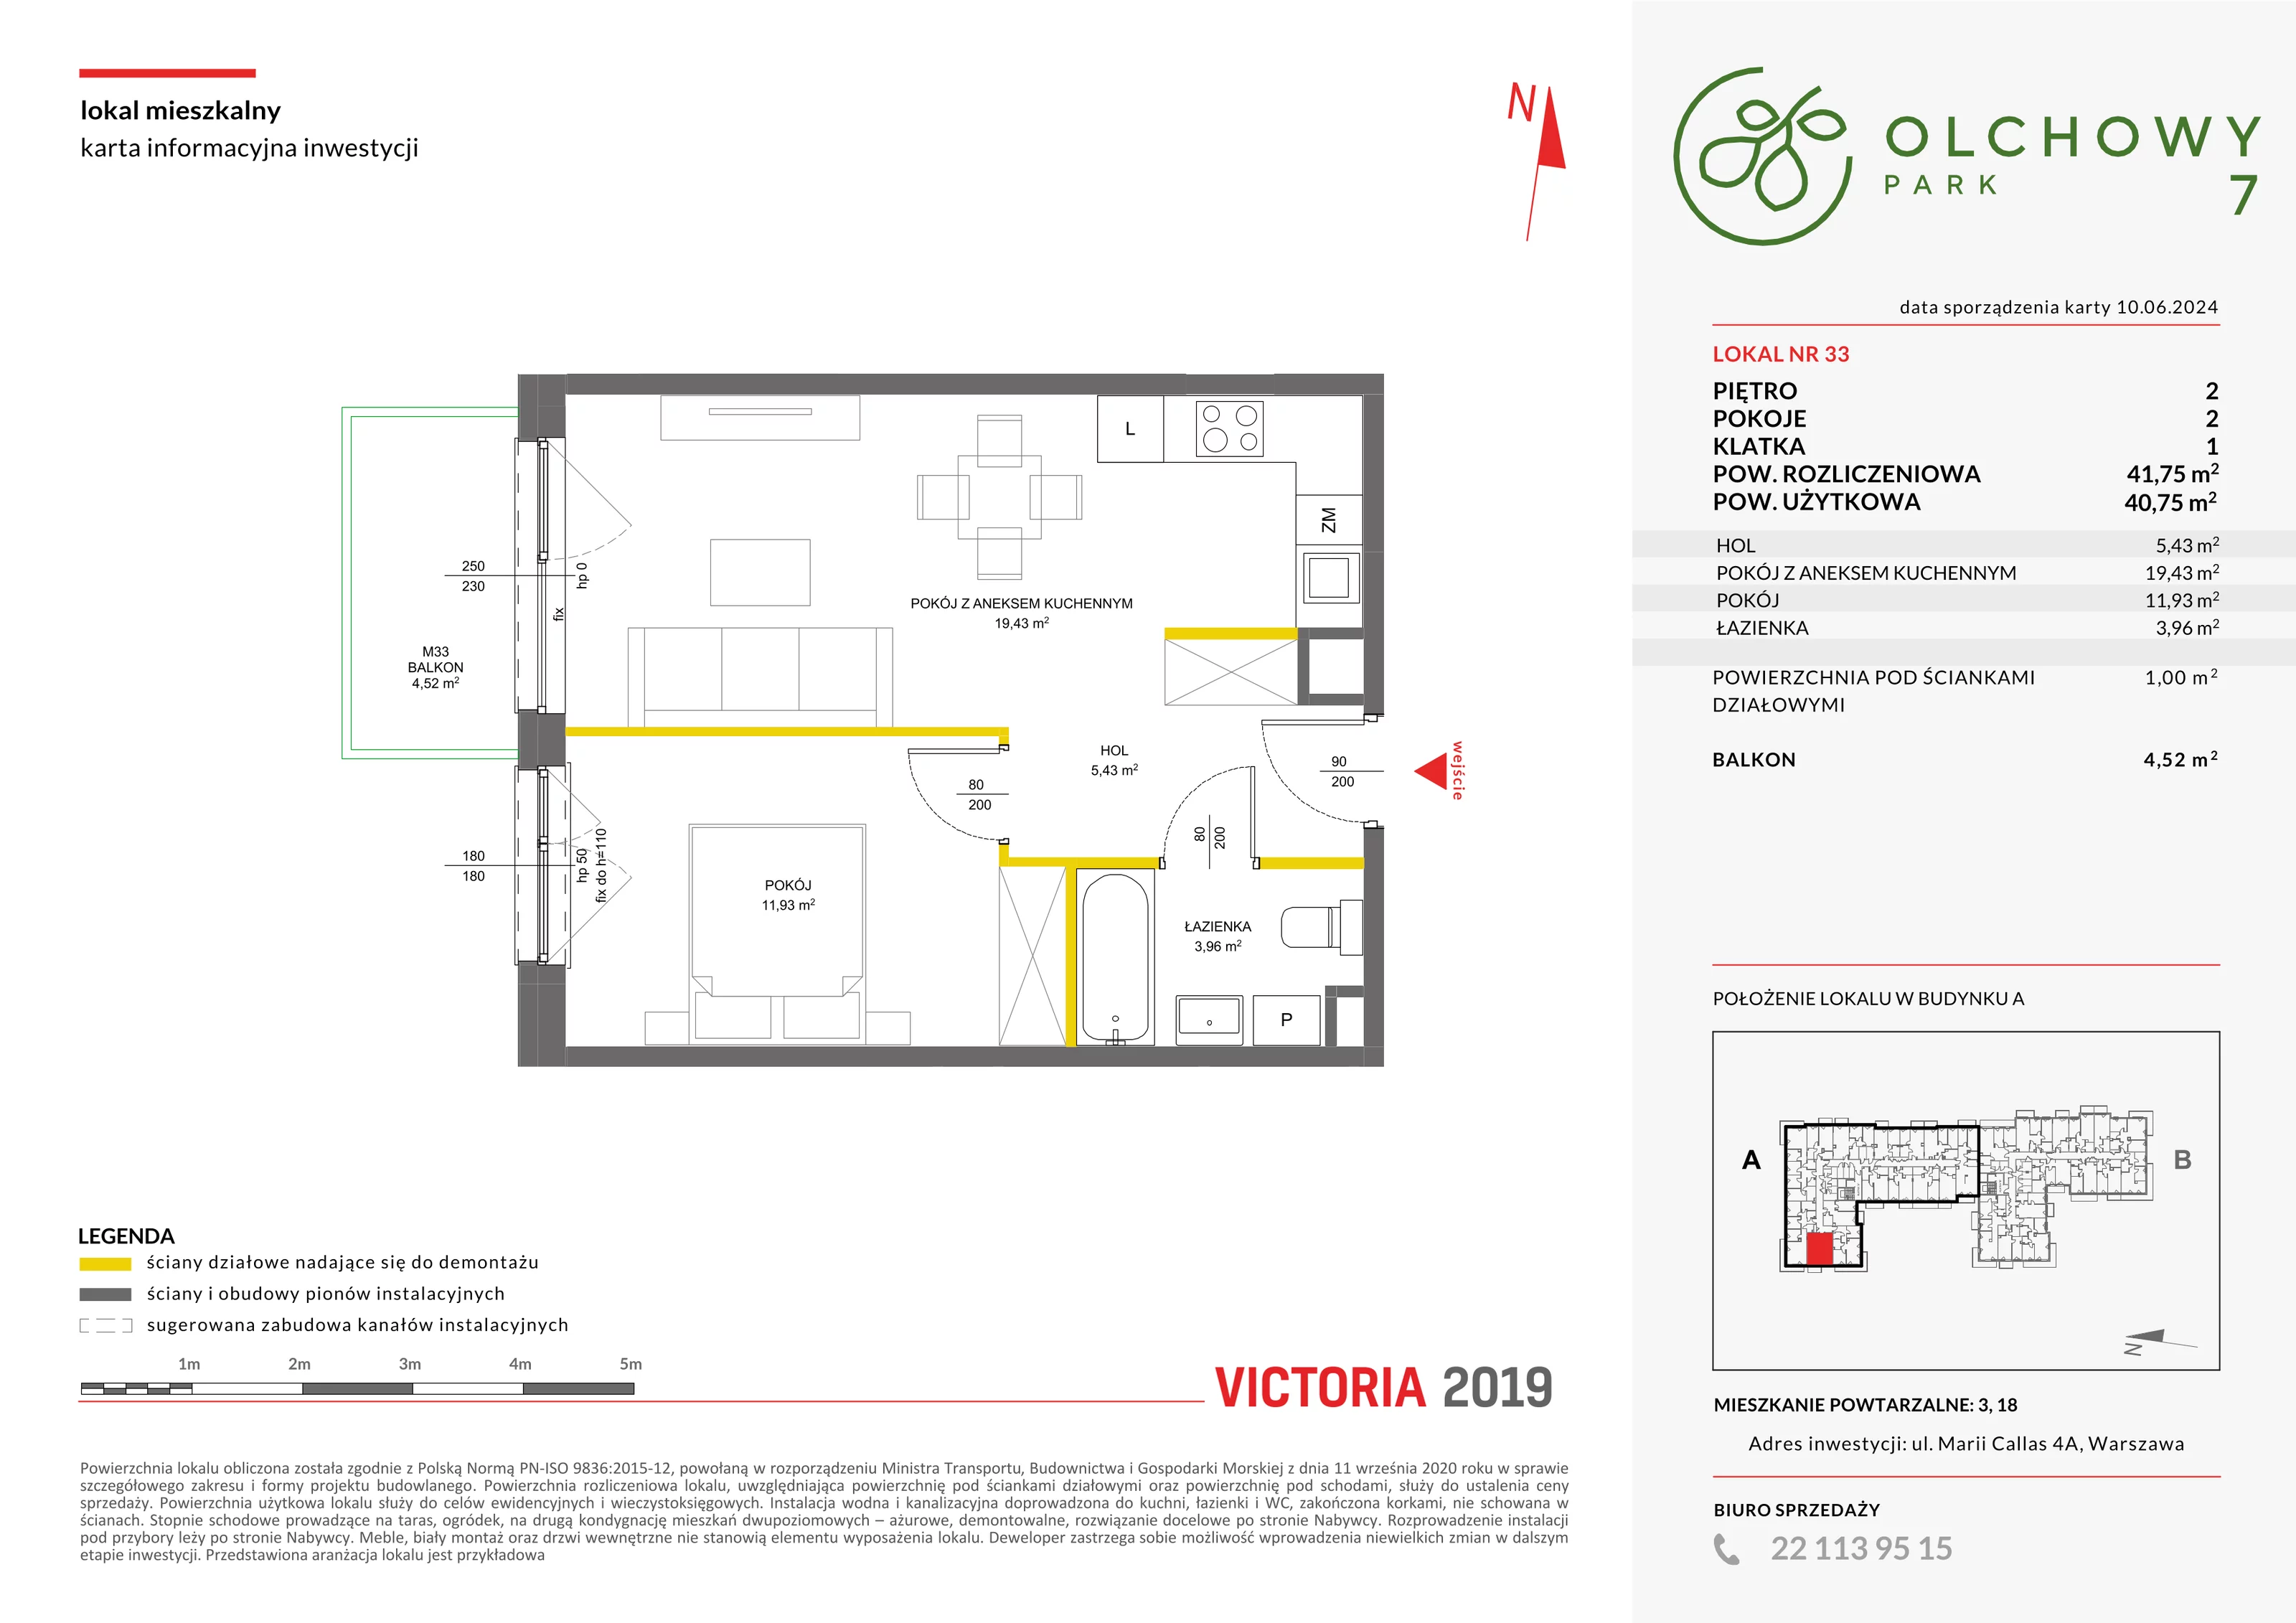 Mieszkanie 41,75 m², piętro 2, oferta nr VII/33, Olchowy Park 7, Warszawa, Białołęka, Kobiałka, ul. Marii Callas 4A